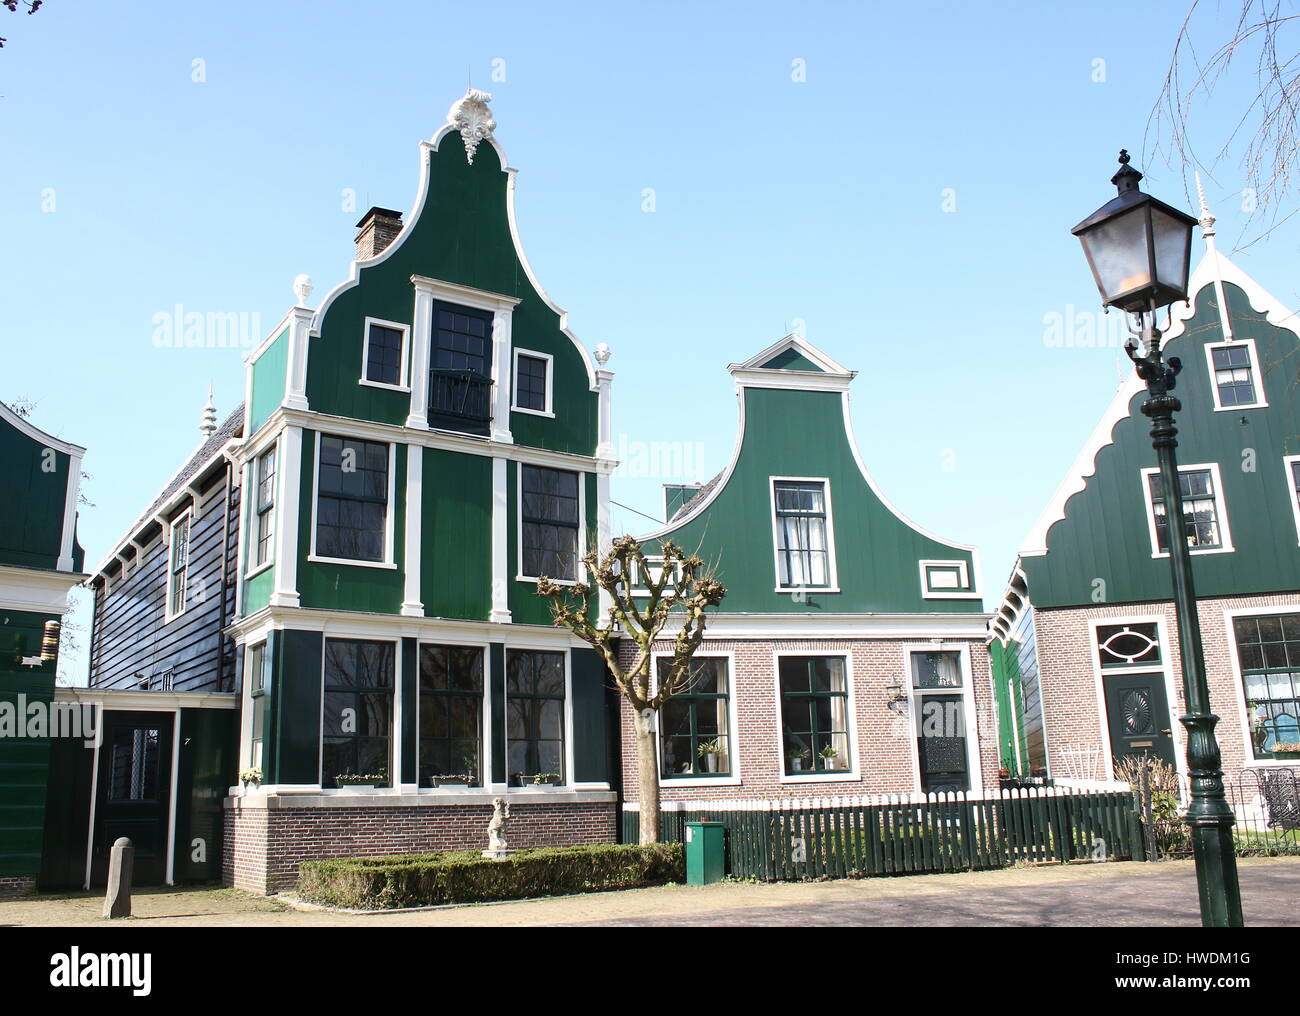 Traditional Dutch wooden houses at the village of Zaanse Schans, Zaandam / Zaandijk, Netherlands Stock Photo